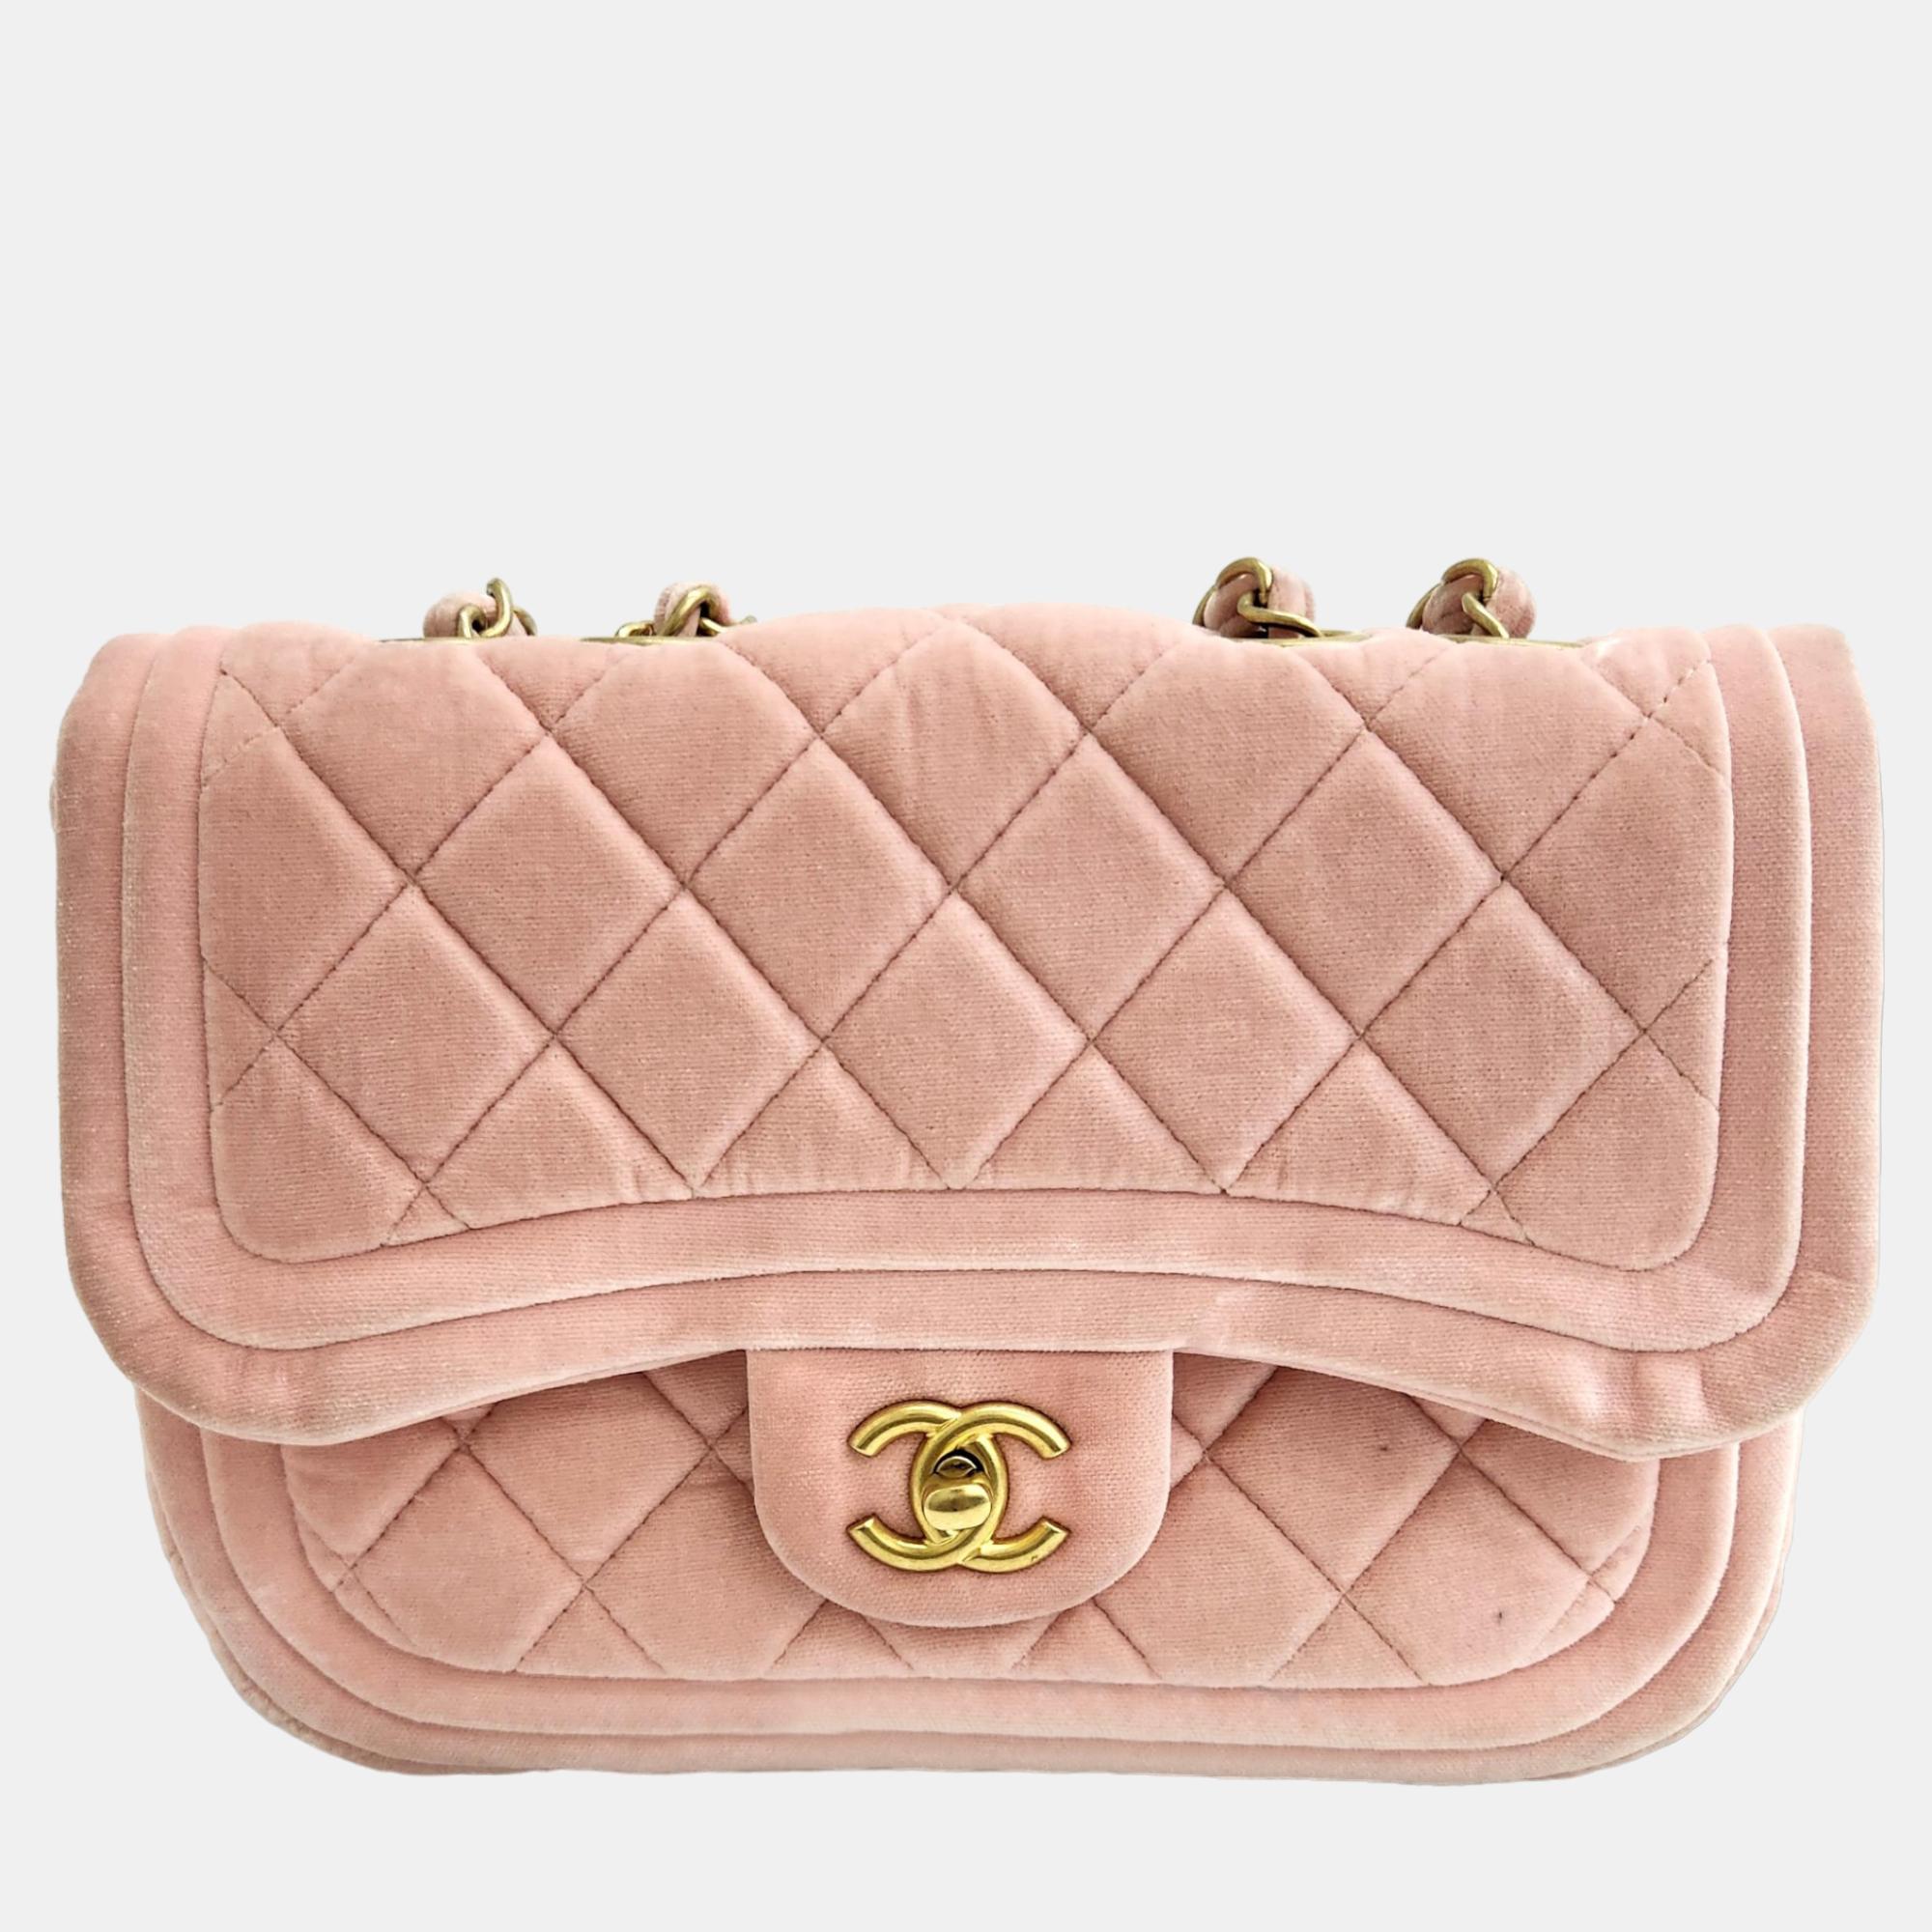 Chanel pink velvet mini flap bag